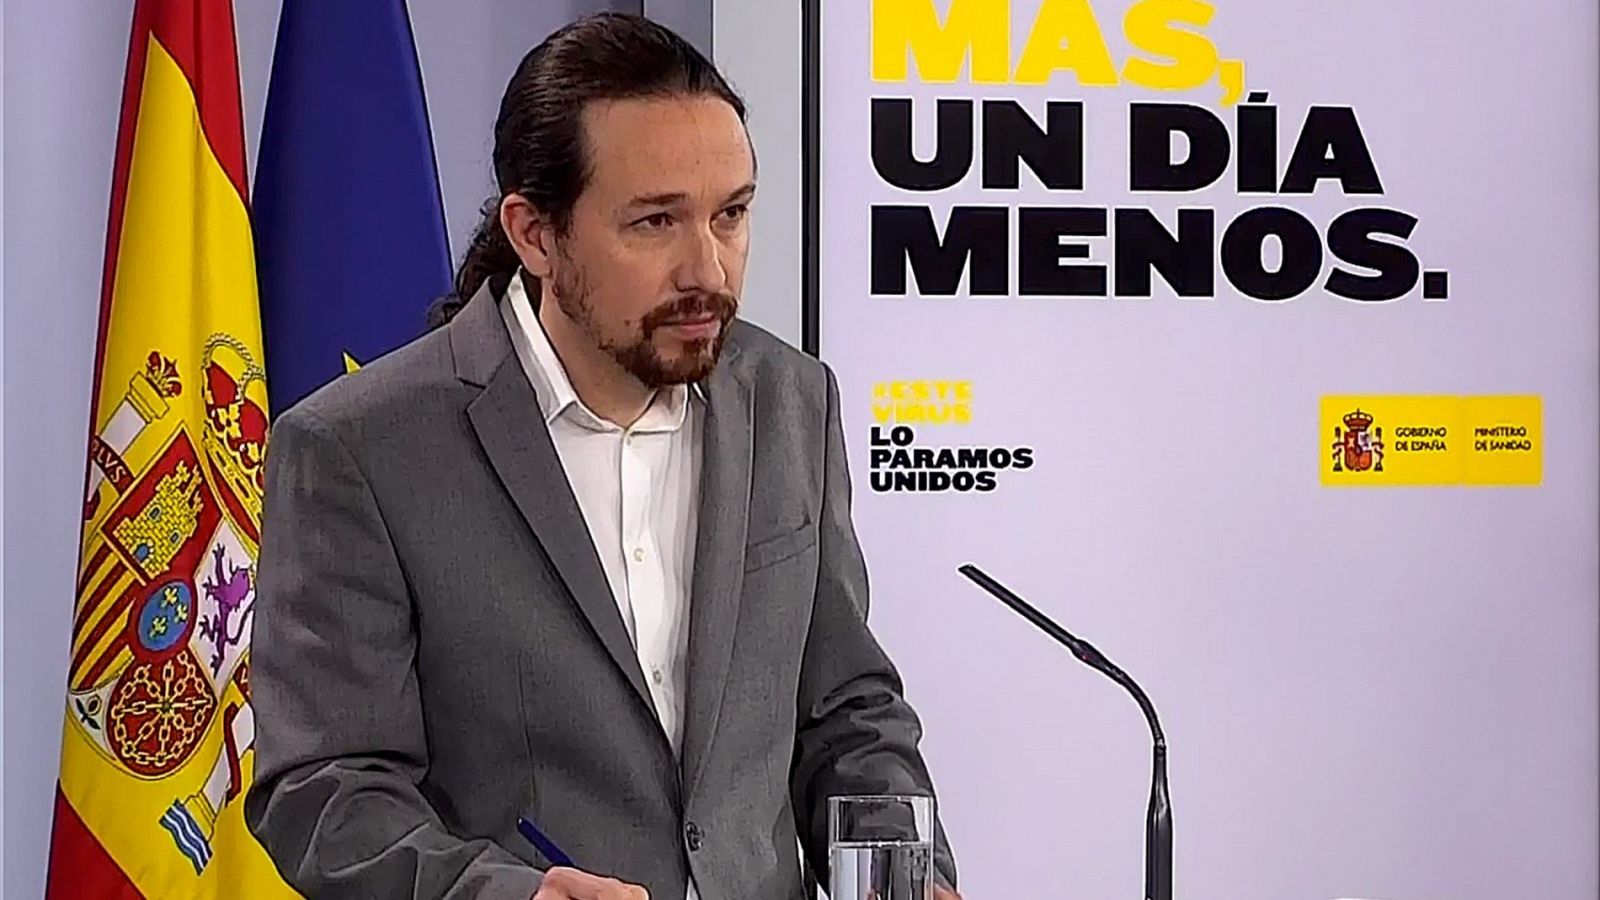 Iglesias: "Cuando uno comete un error tiene que disculparse y ponerse a trabajar para enmendarlo" - RTVE.es